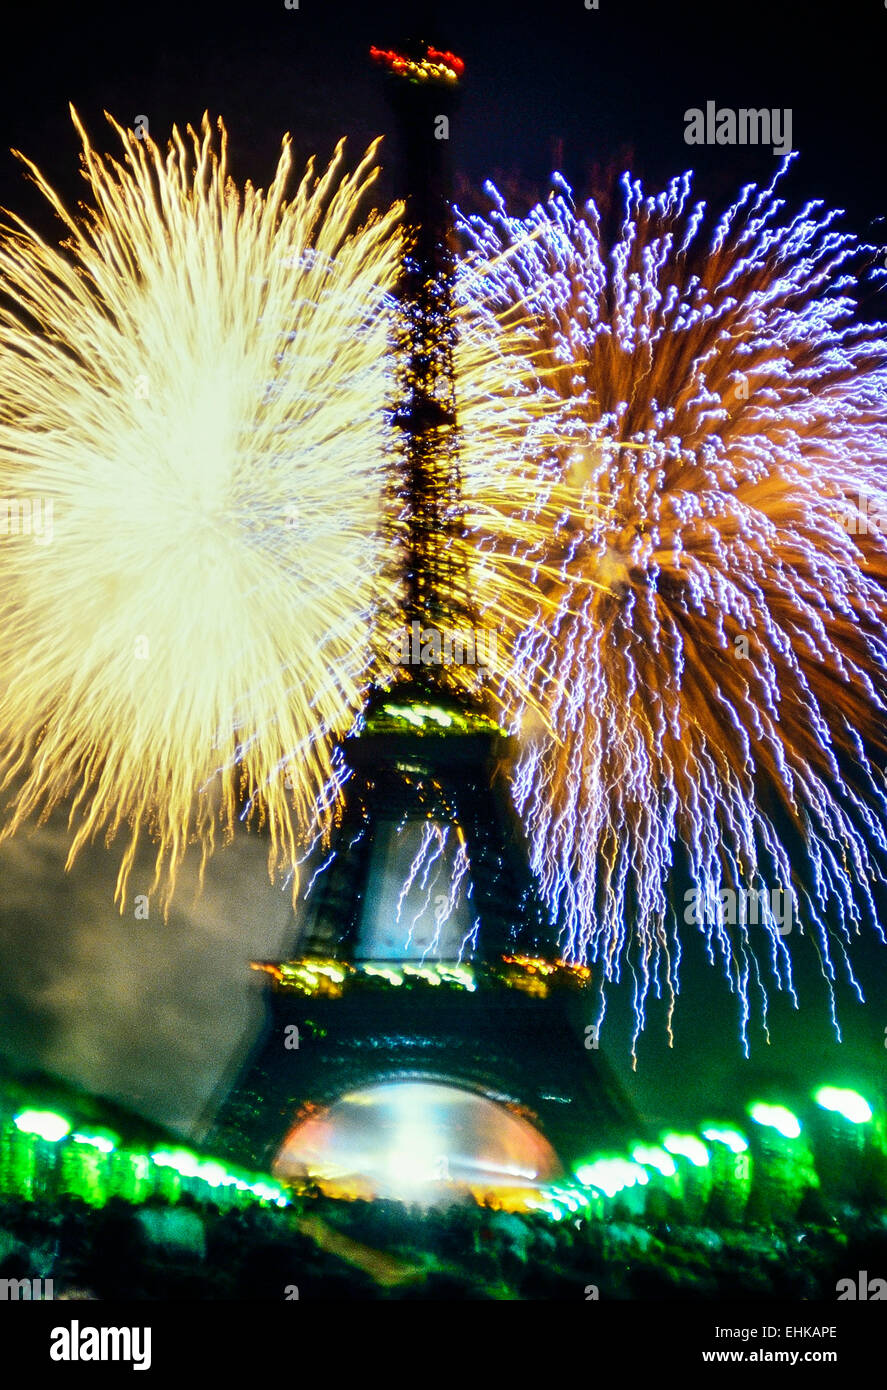 À Paris, le 17 juin 1989, feu d'artifice sur le centenaire de la Tour Eiffel. La France. Banque D'Images